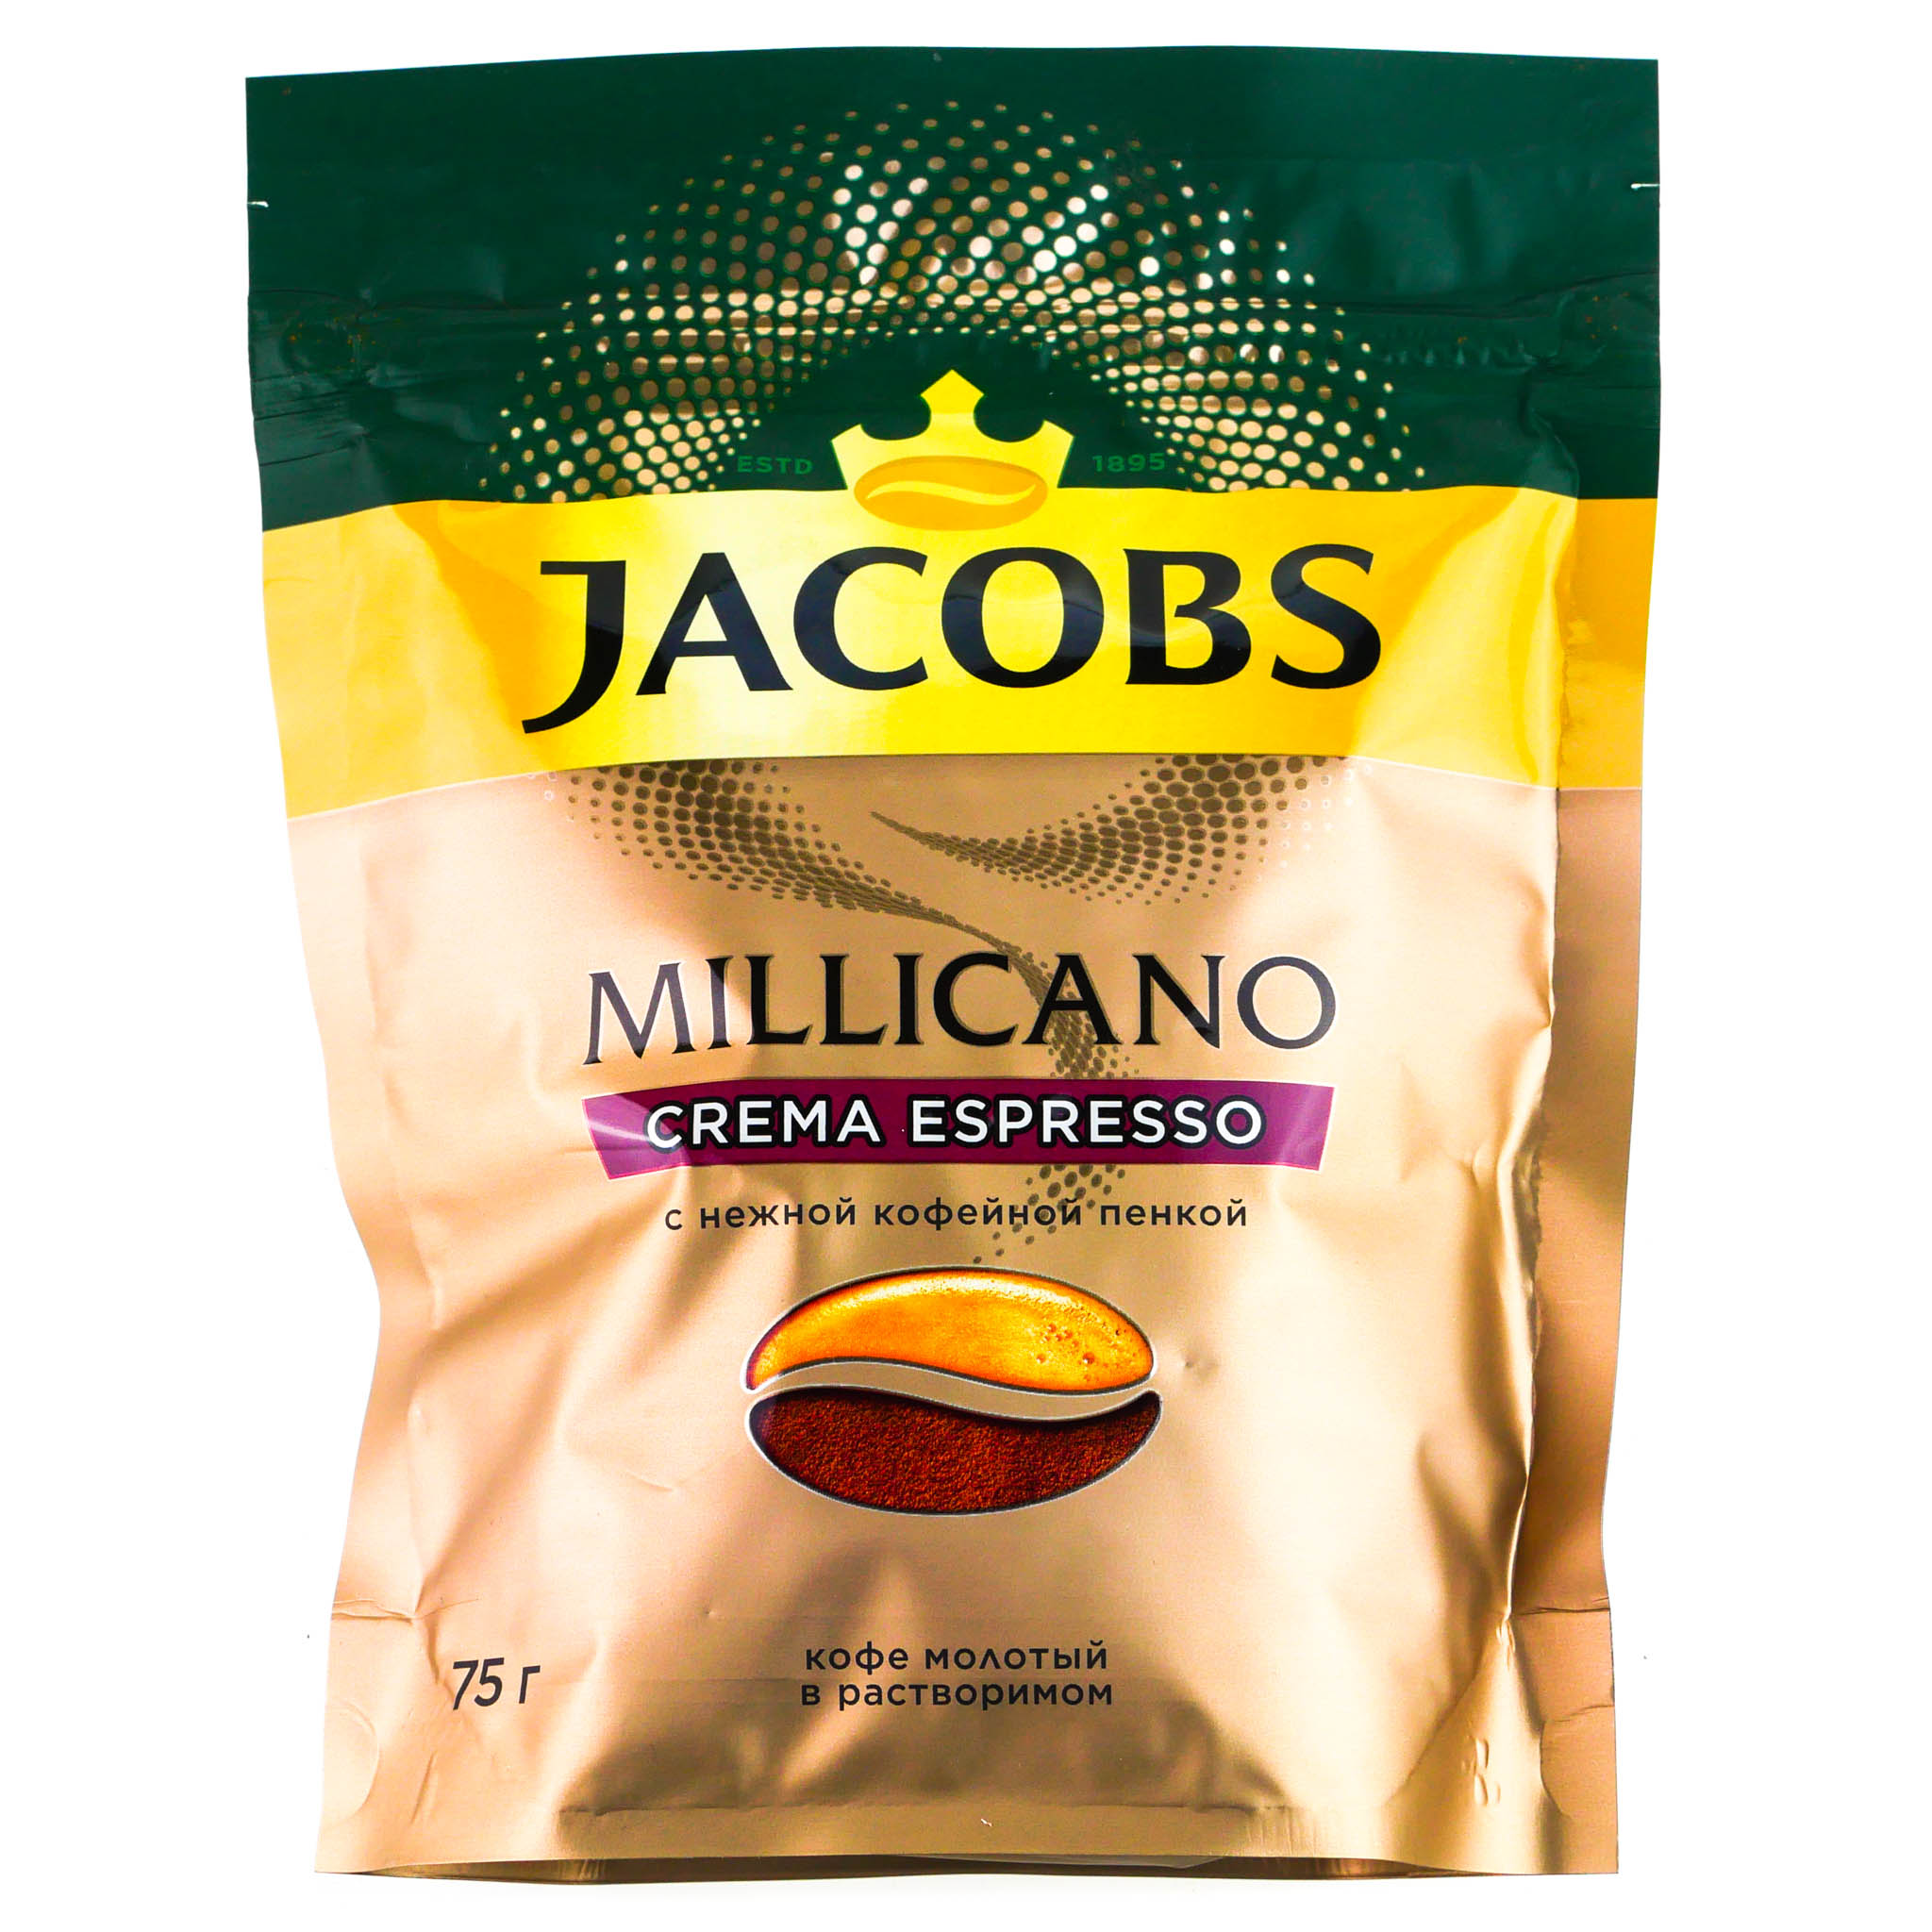 Кофе растворимый миликано. Якобс Миликано crema Espresso. Кофе Jacobs Millicano crema. Кофе Jacobs Millicano crema Espresso. Кофе растворимый Jacobs Millicano , 75 г.